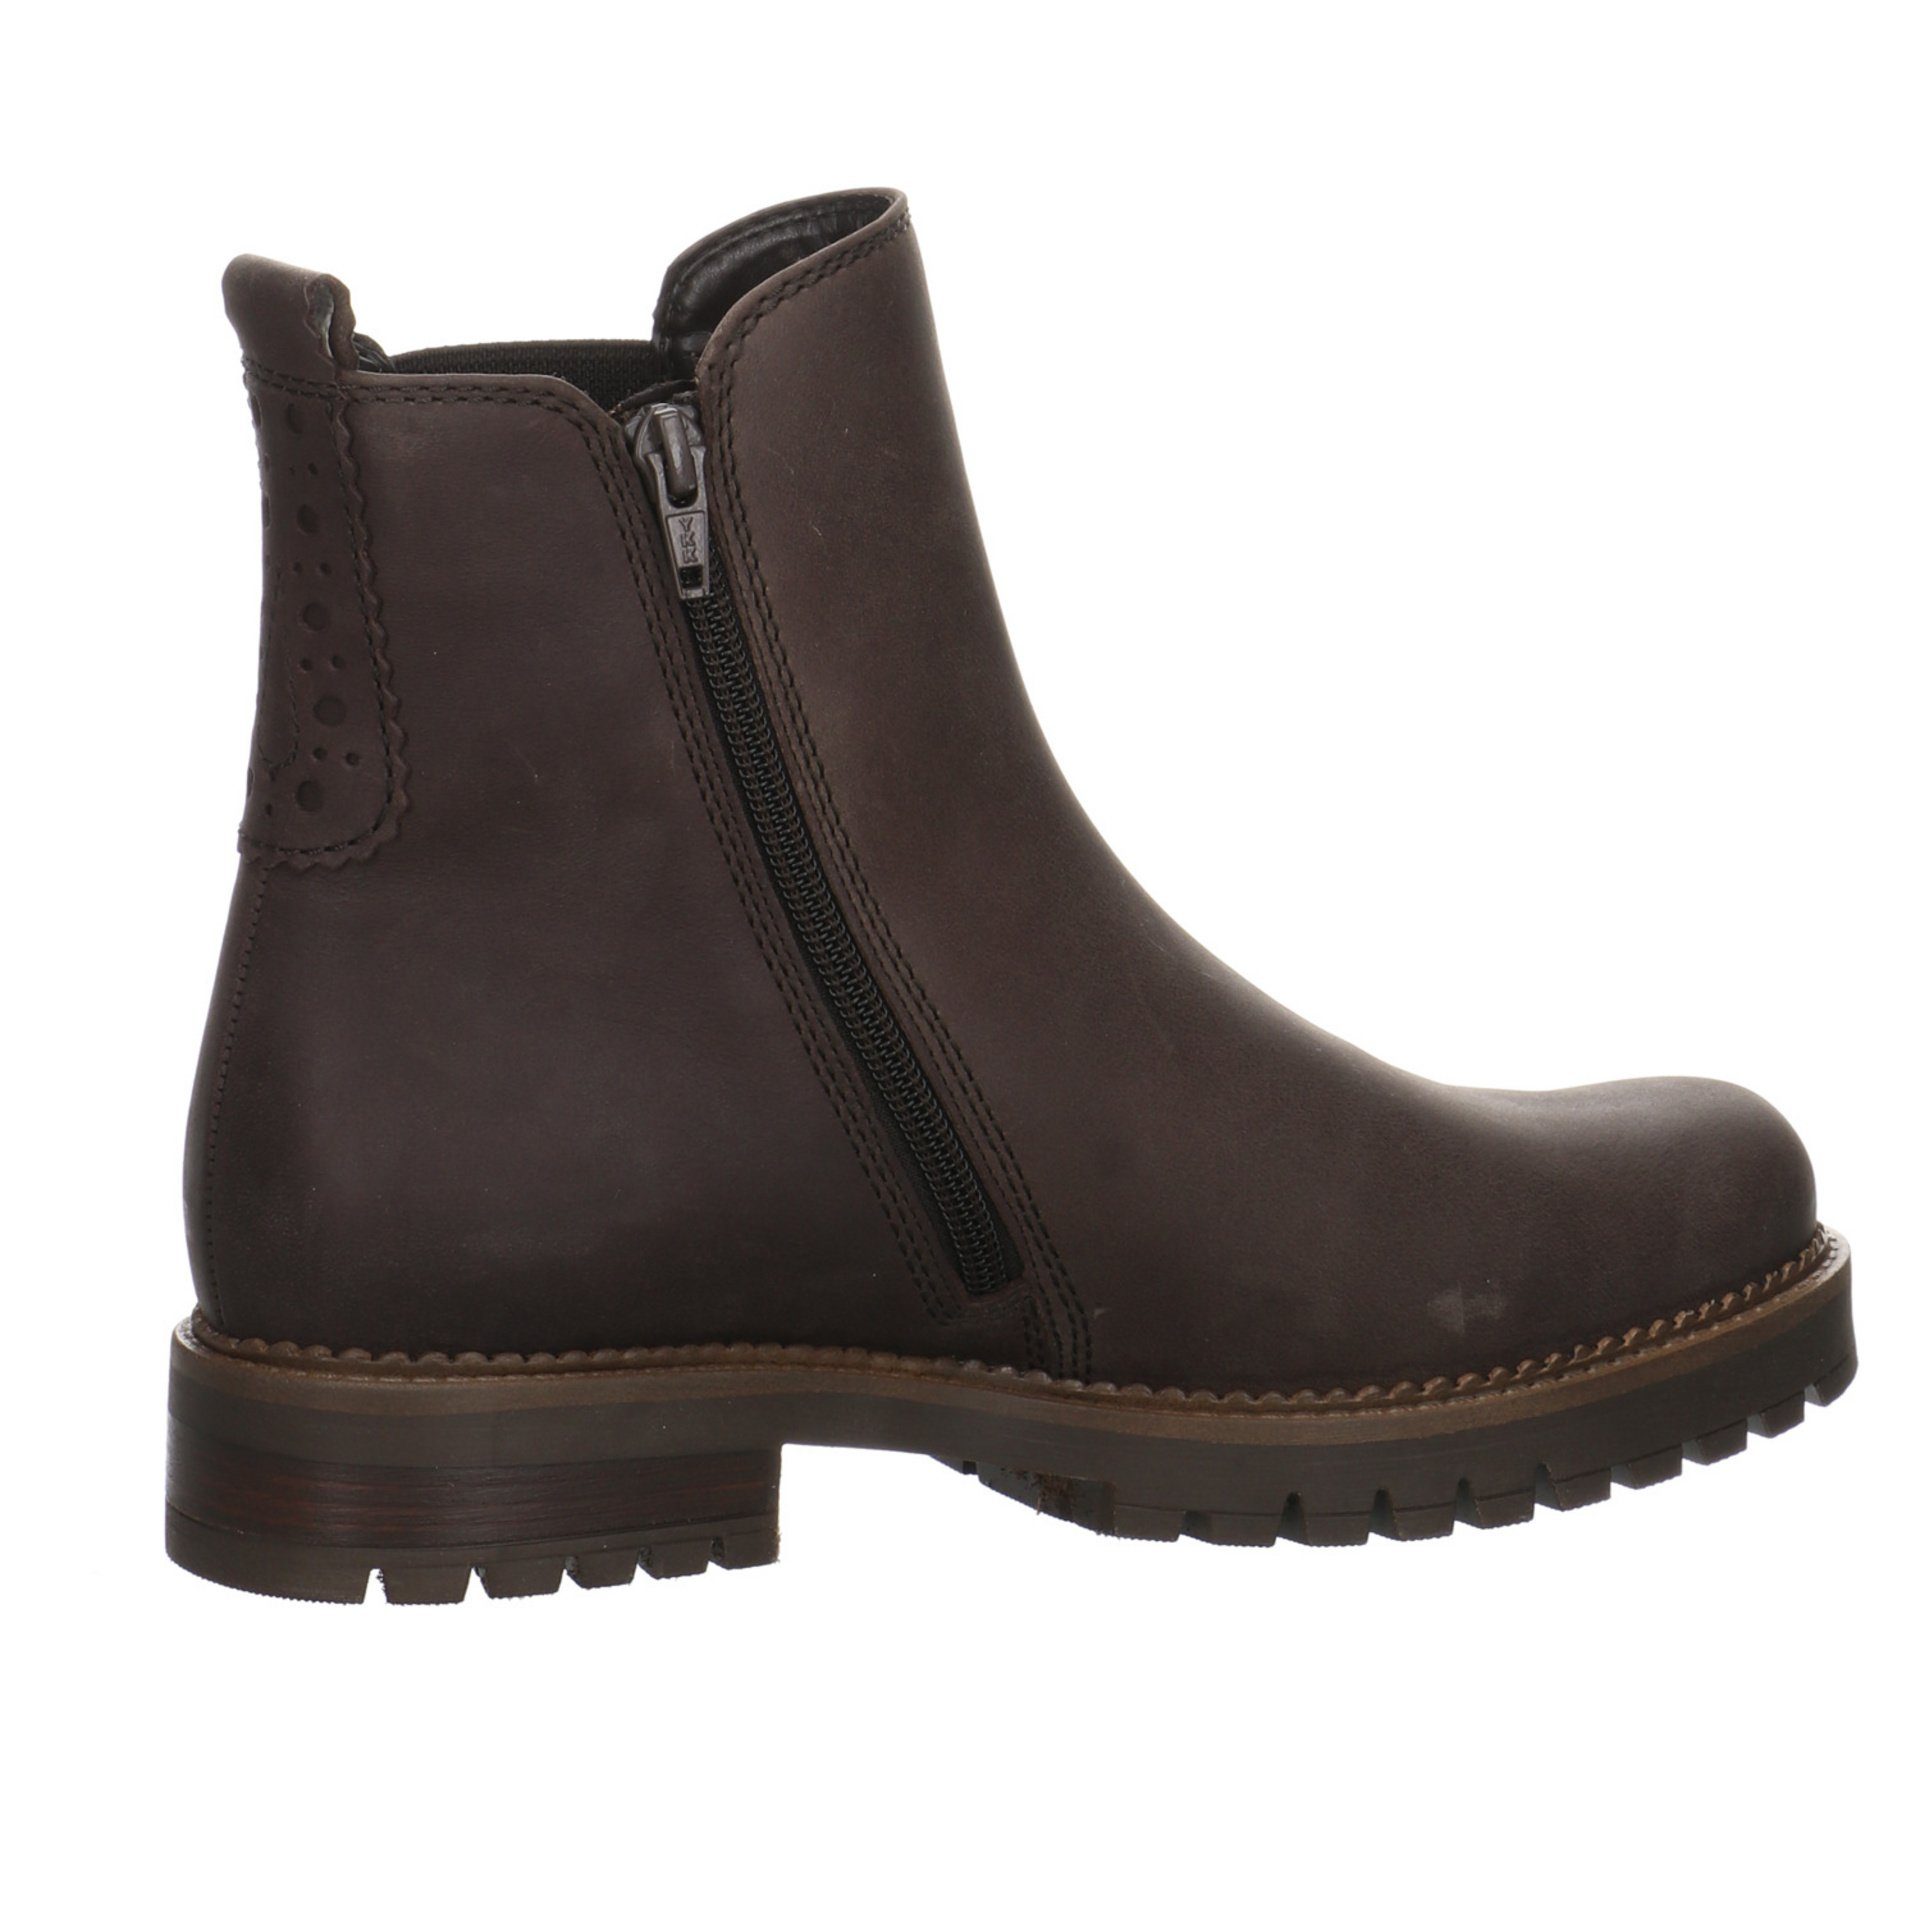 Gabor Damen Leder-/Textilkombination (espresso) Stiefel Braun Schuhe Stiefel Chelsea-Boots